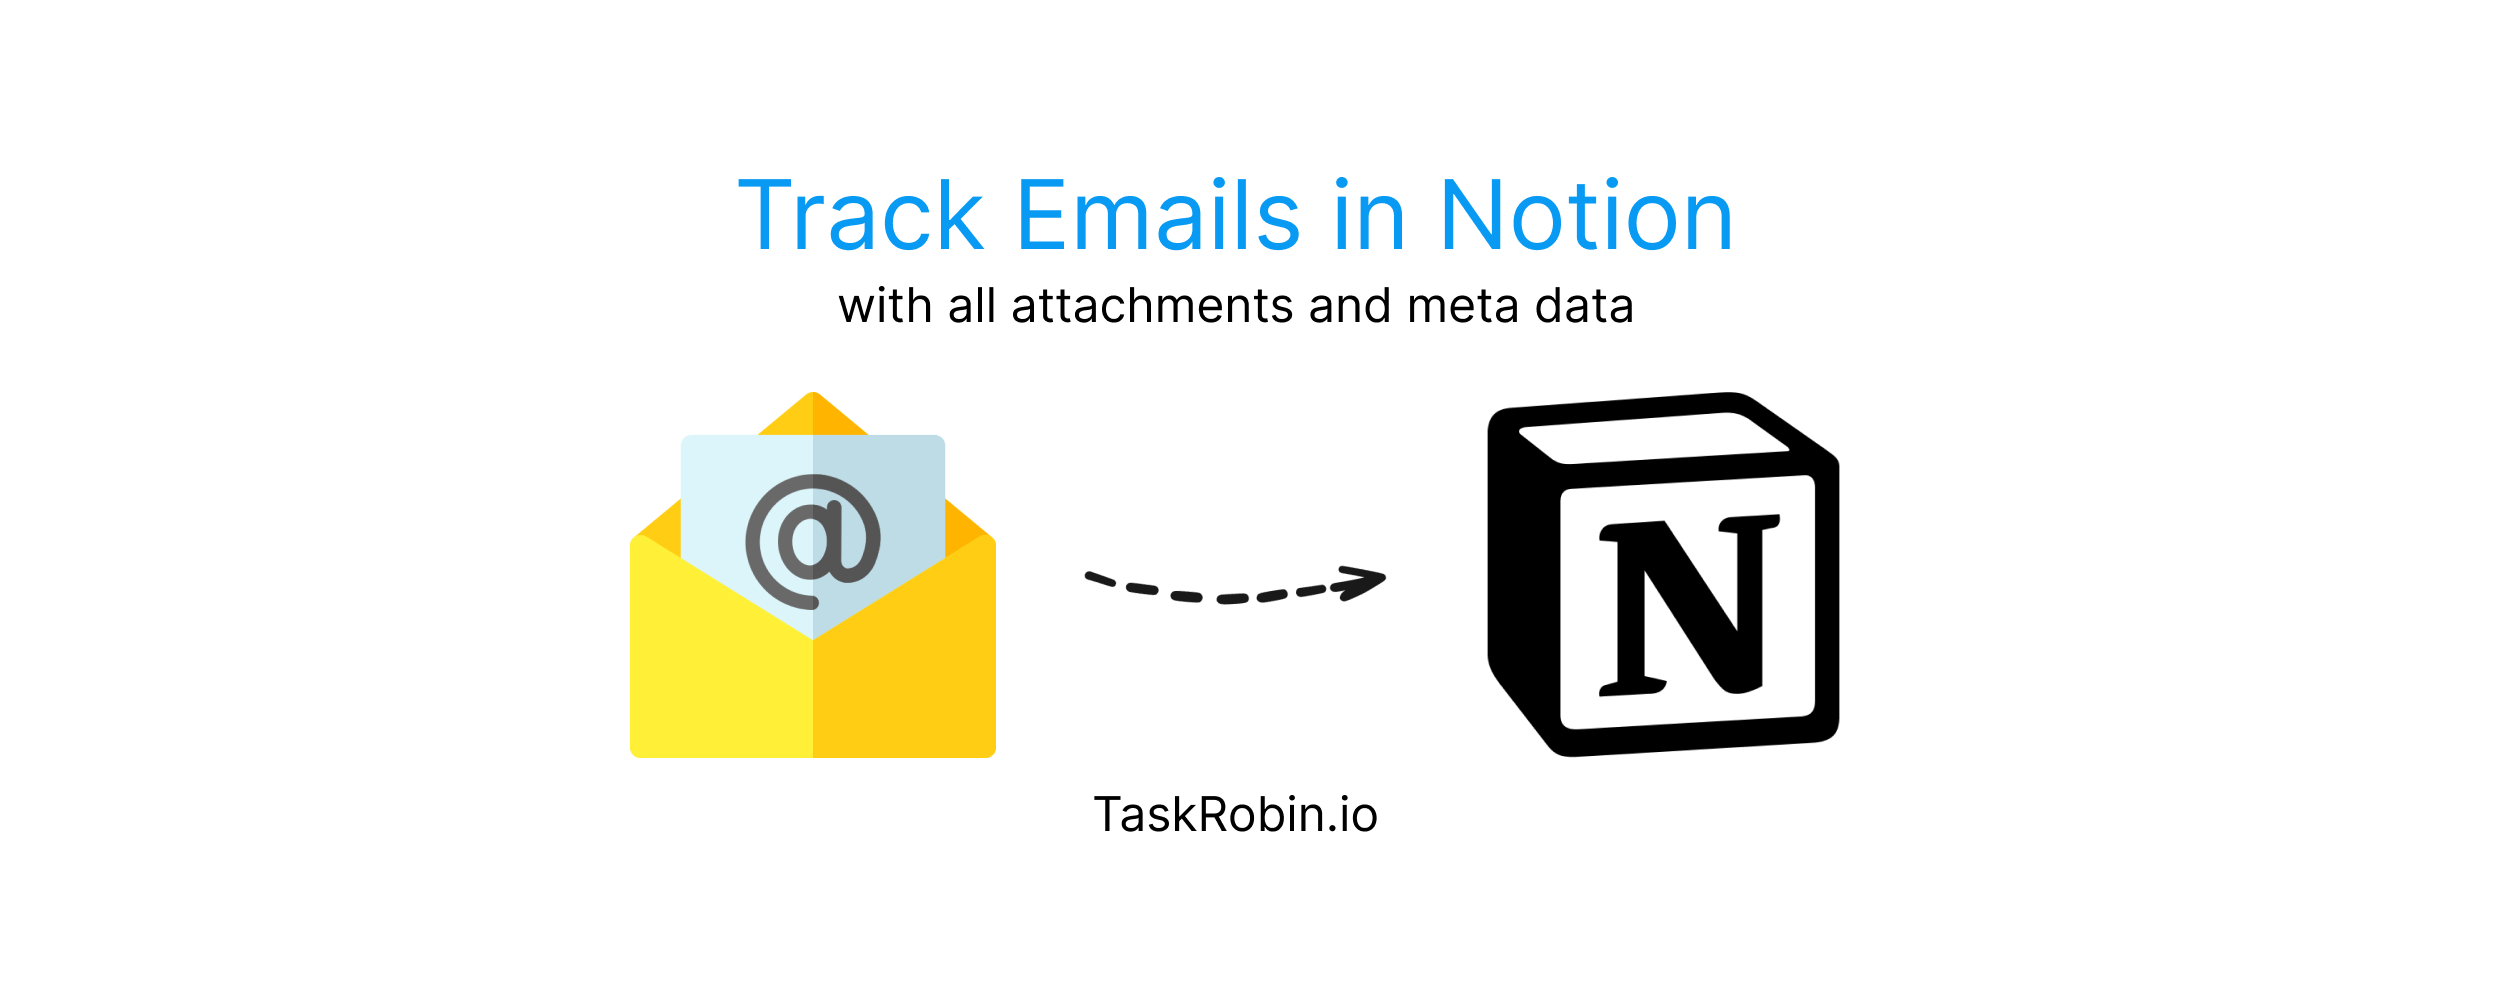 TaskRobin saves emails to Notion